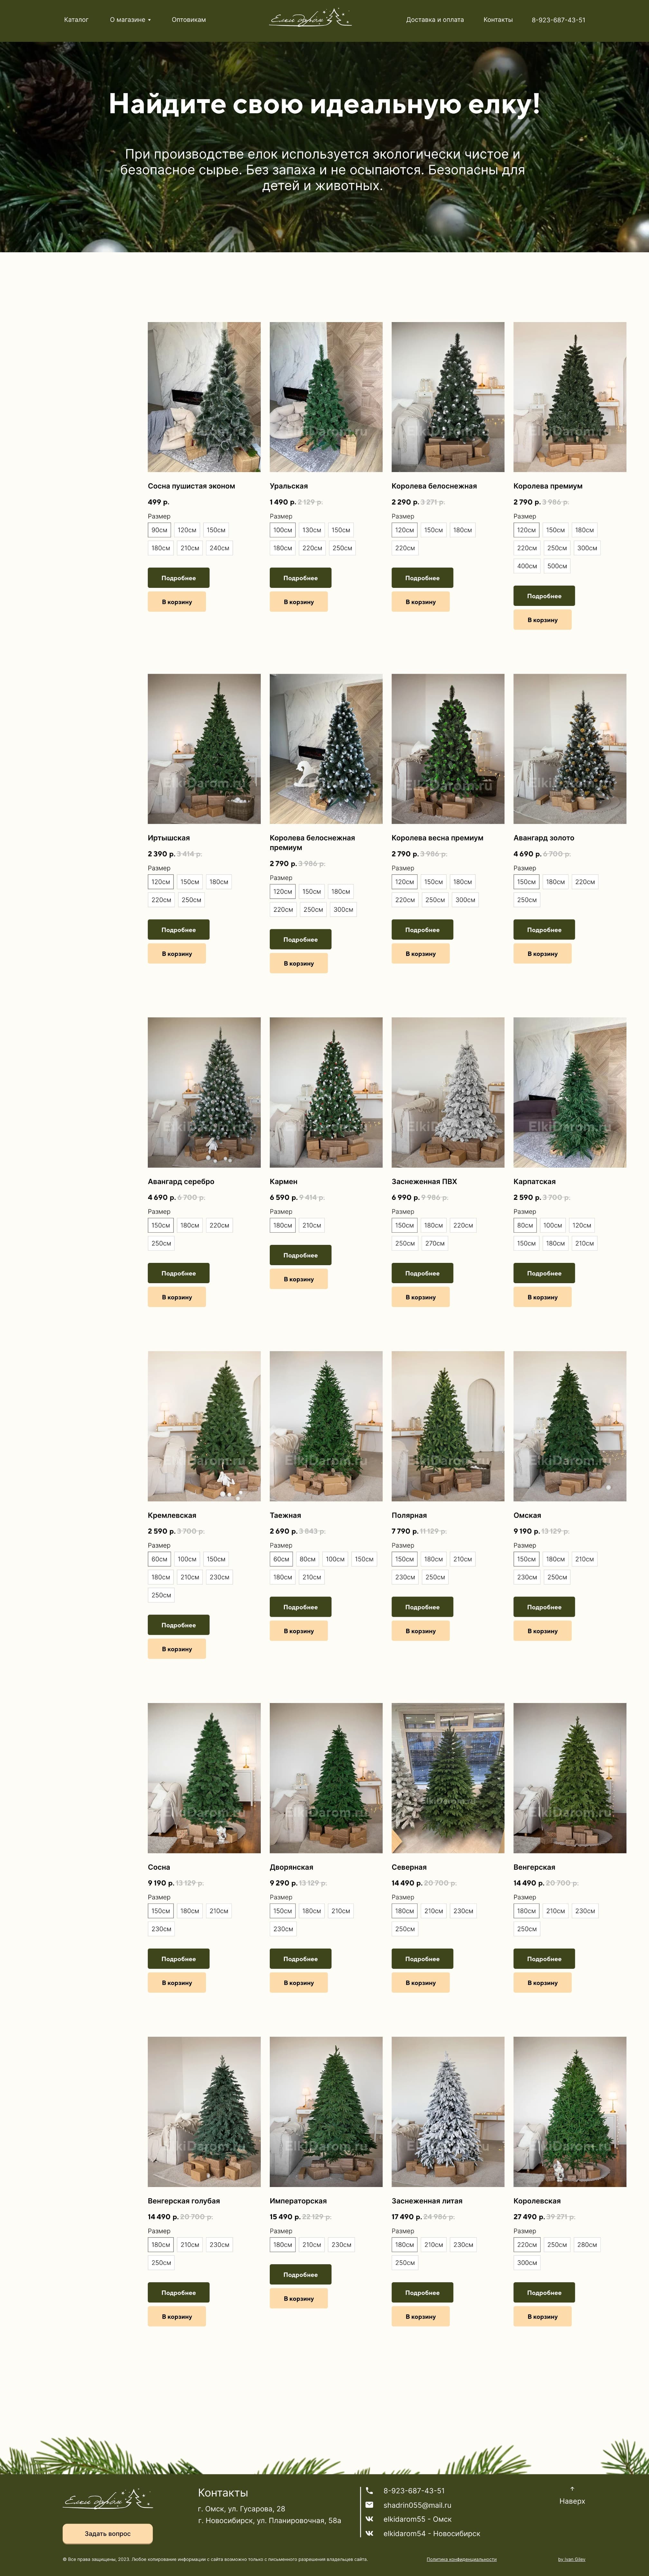 Пример главной страницы сайта для продажи елок 